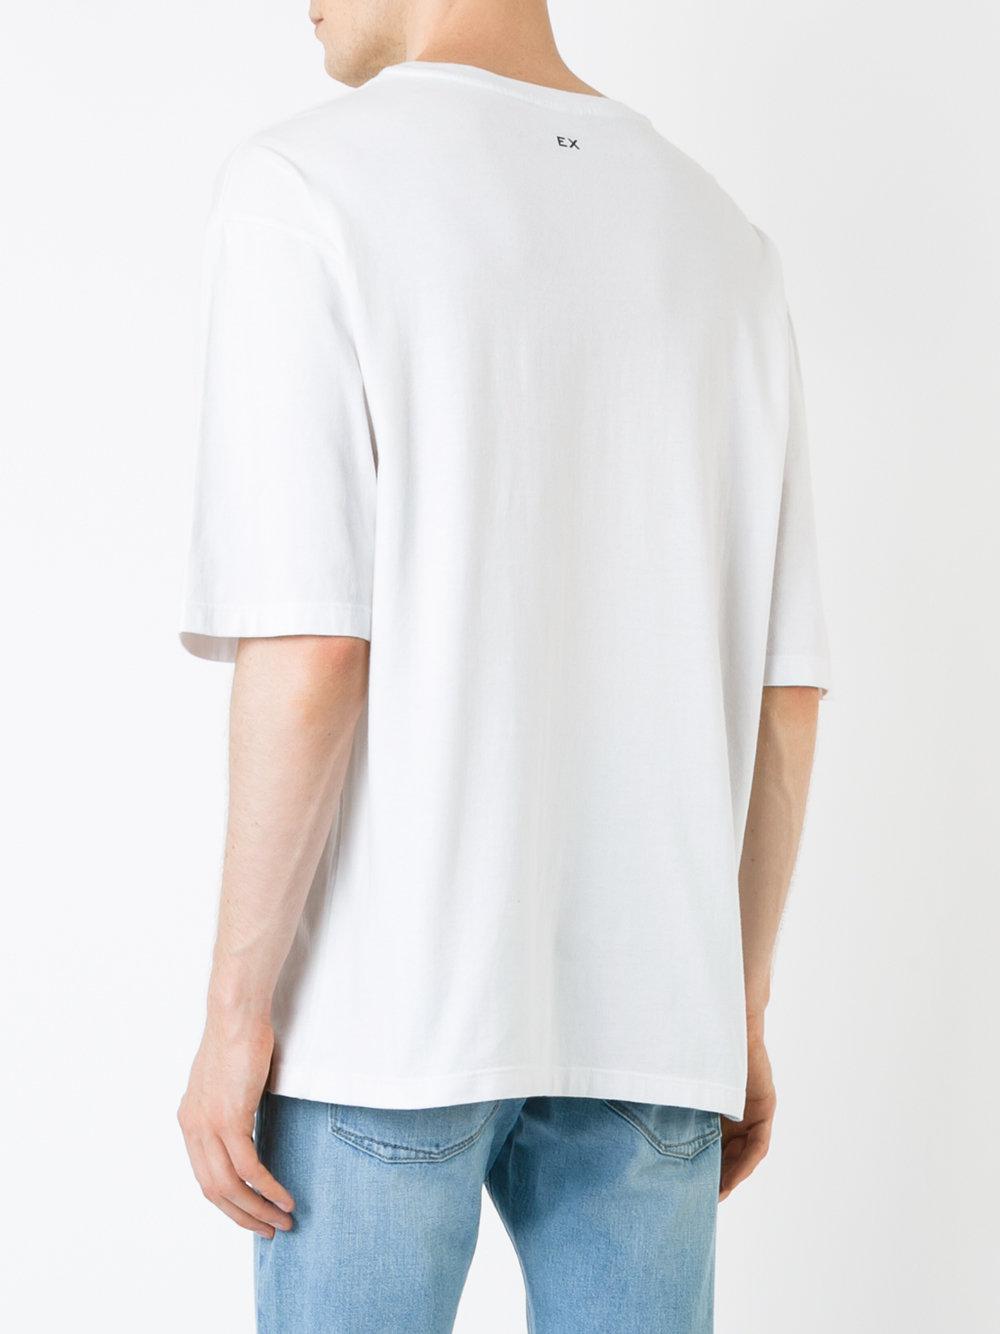 EX Infinitas Cotton Surf Sticker T-shirt in White for Men - Lyst